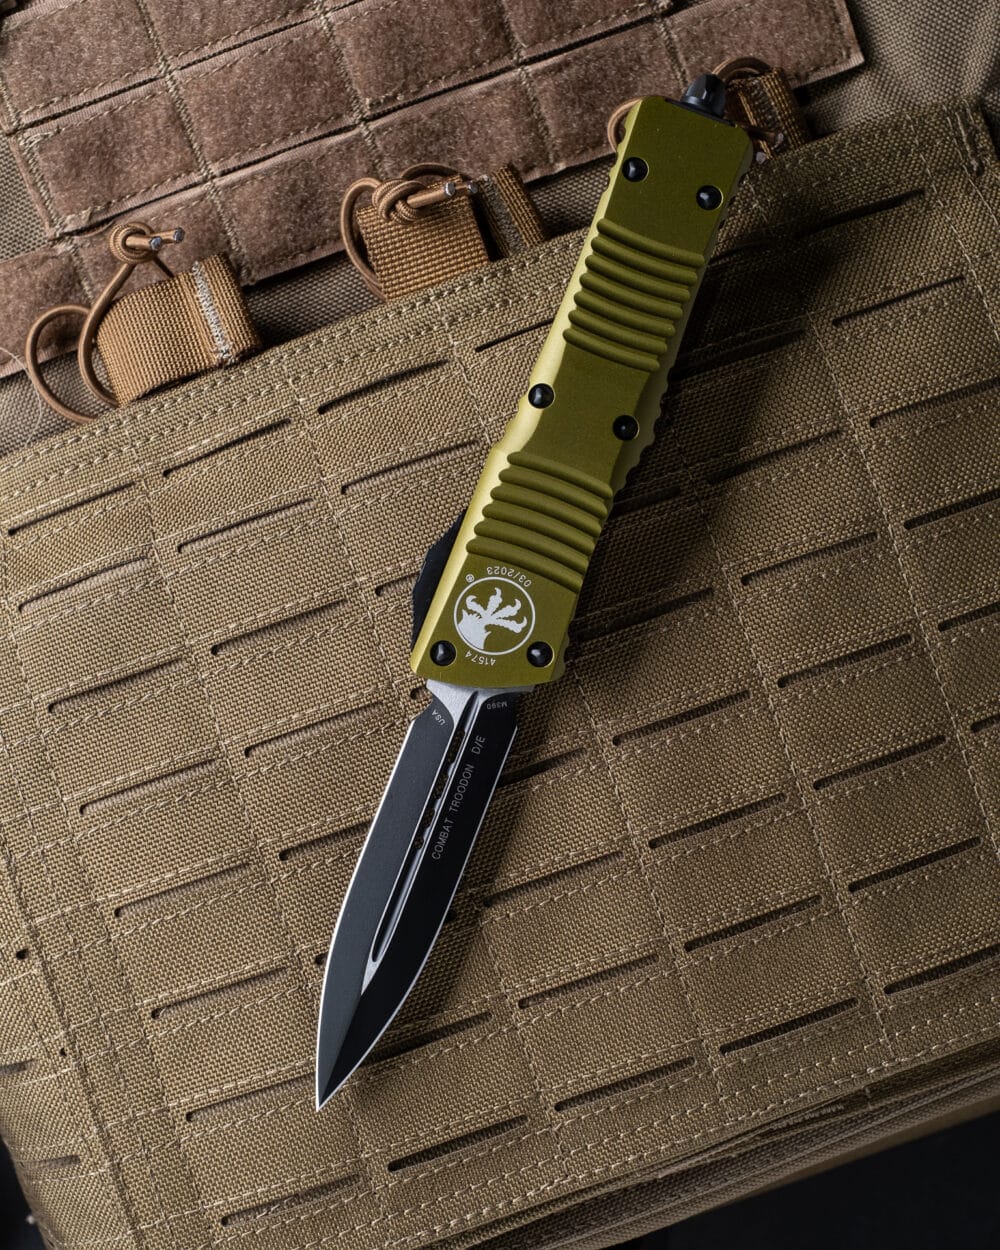 Microtech Combat Troodon D/E, OTF Knife, OD Green Standard (142-1OD)